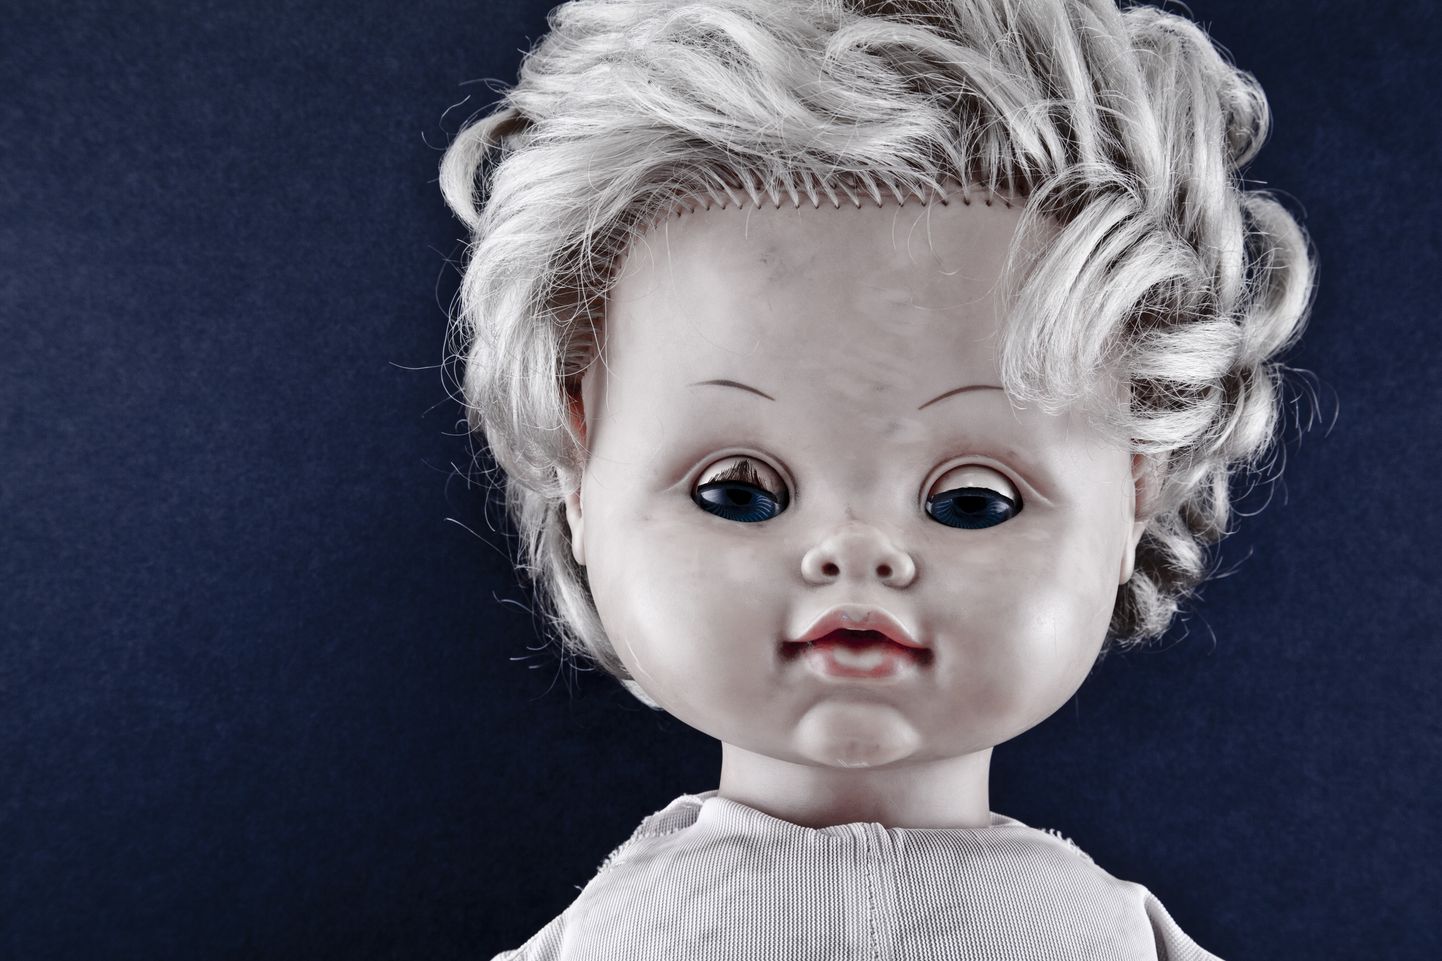 Naine leidis lapsepõlvekodust õige hirmuäratava nuku.